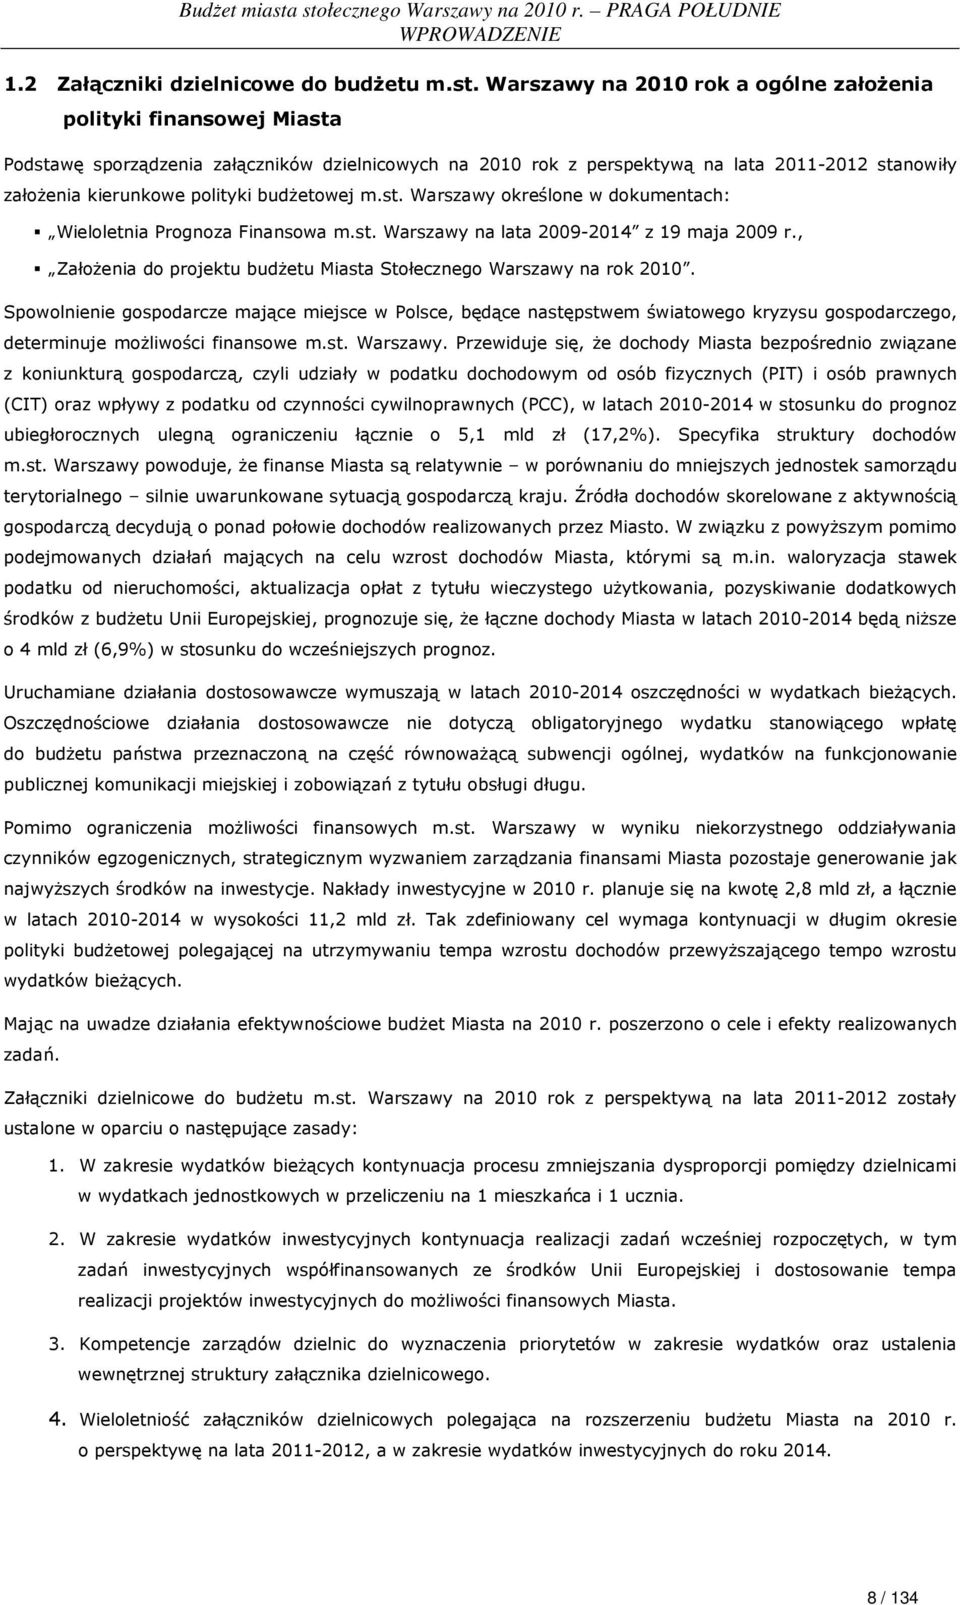 budŝetowej m.st. Warszawy określone w dokumentach: Wieloletnia Prognoza Finansowa m.st. Warszawy na lata 2009-2014 z 19 maja 2009 r.